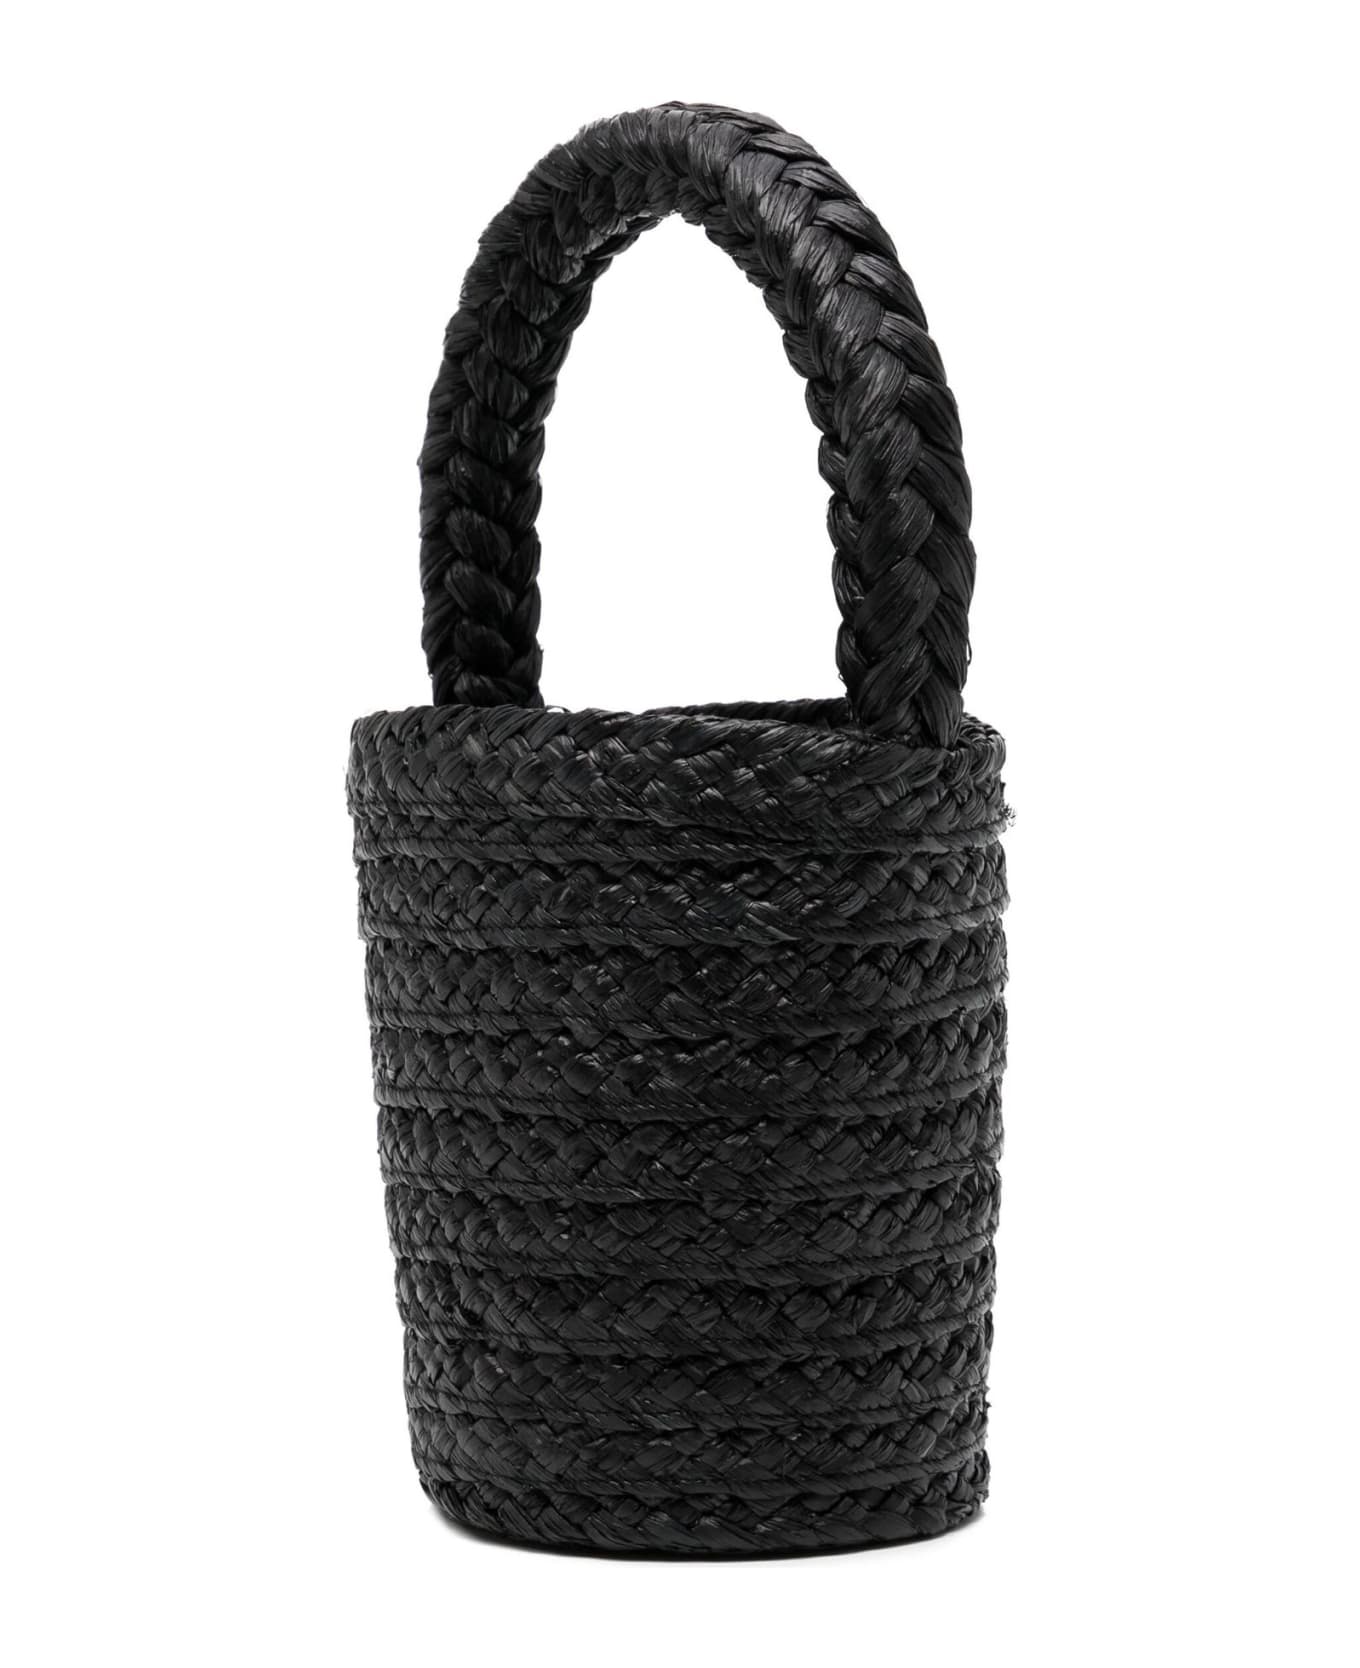 Patou Black Raffia Bucket Bag - Black